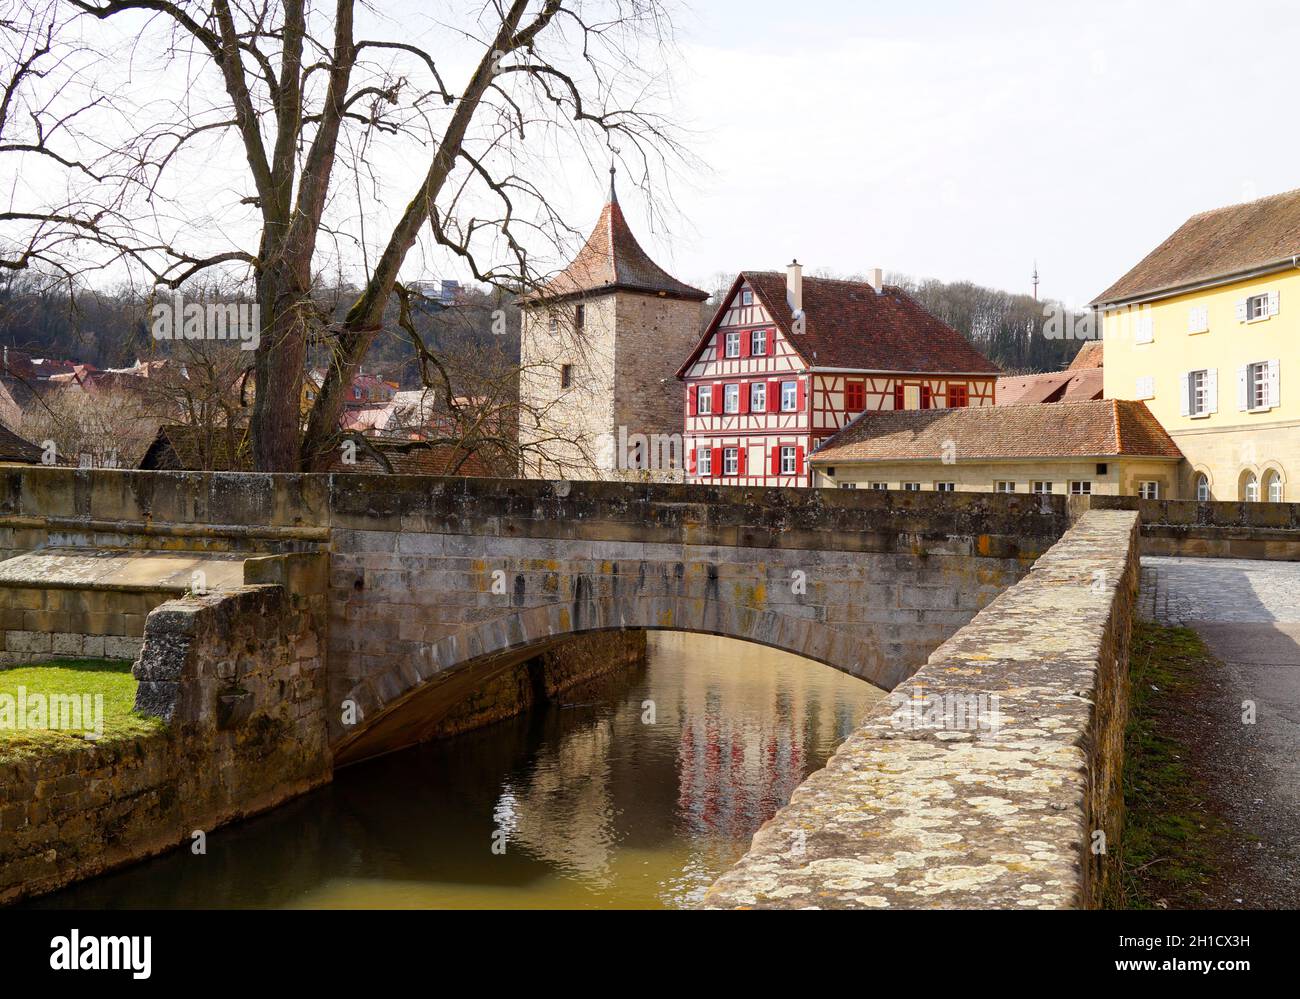 Un pont en pierre sur la rivière Kocher dans la belle vieille ville historique de Schwaebisch Hall en Allemagne Banque D'Images